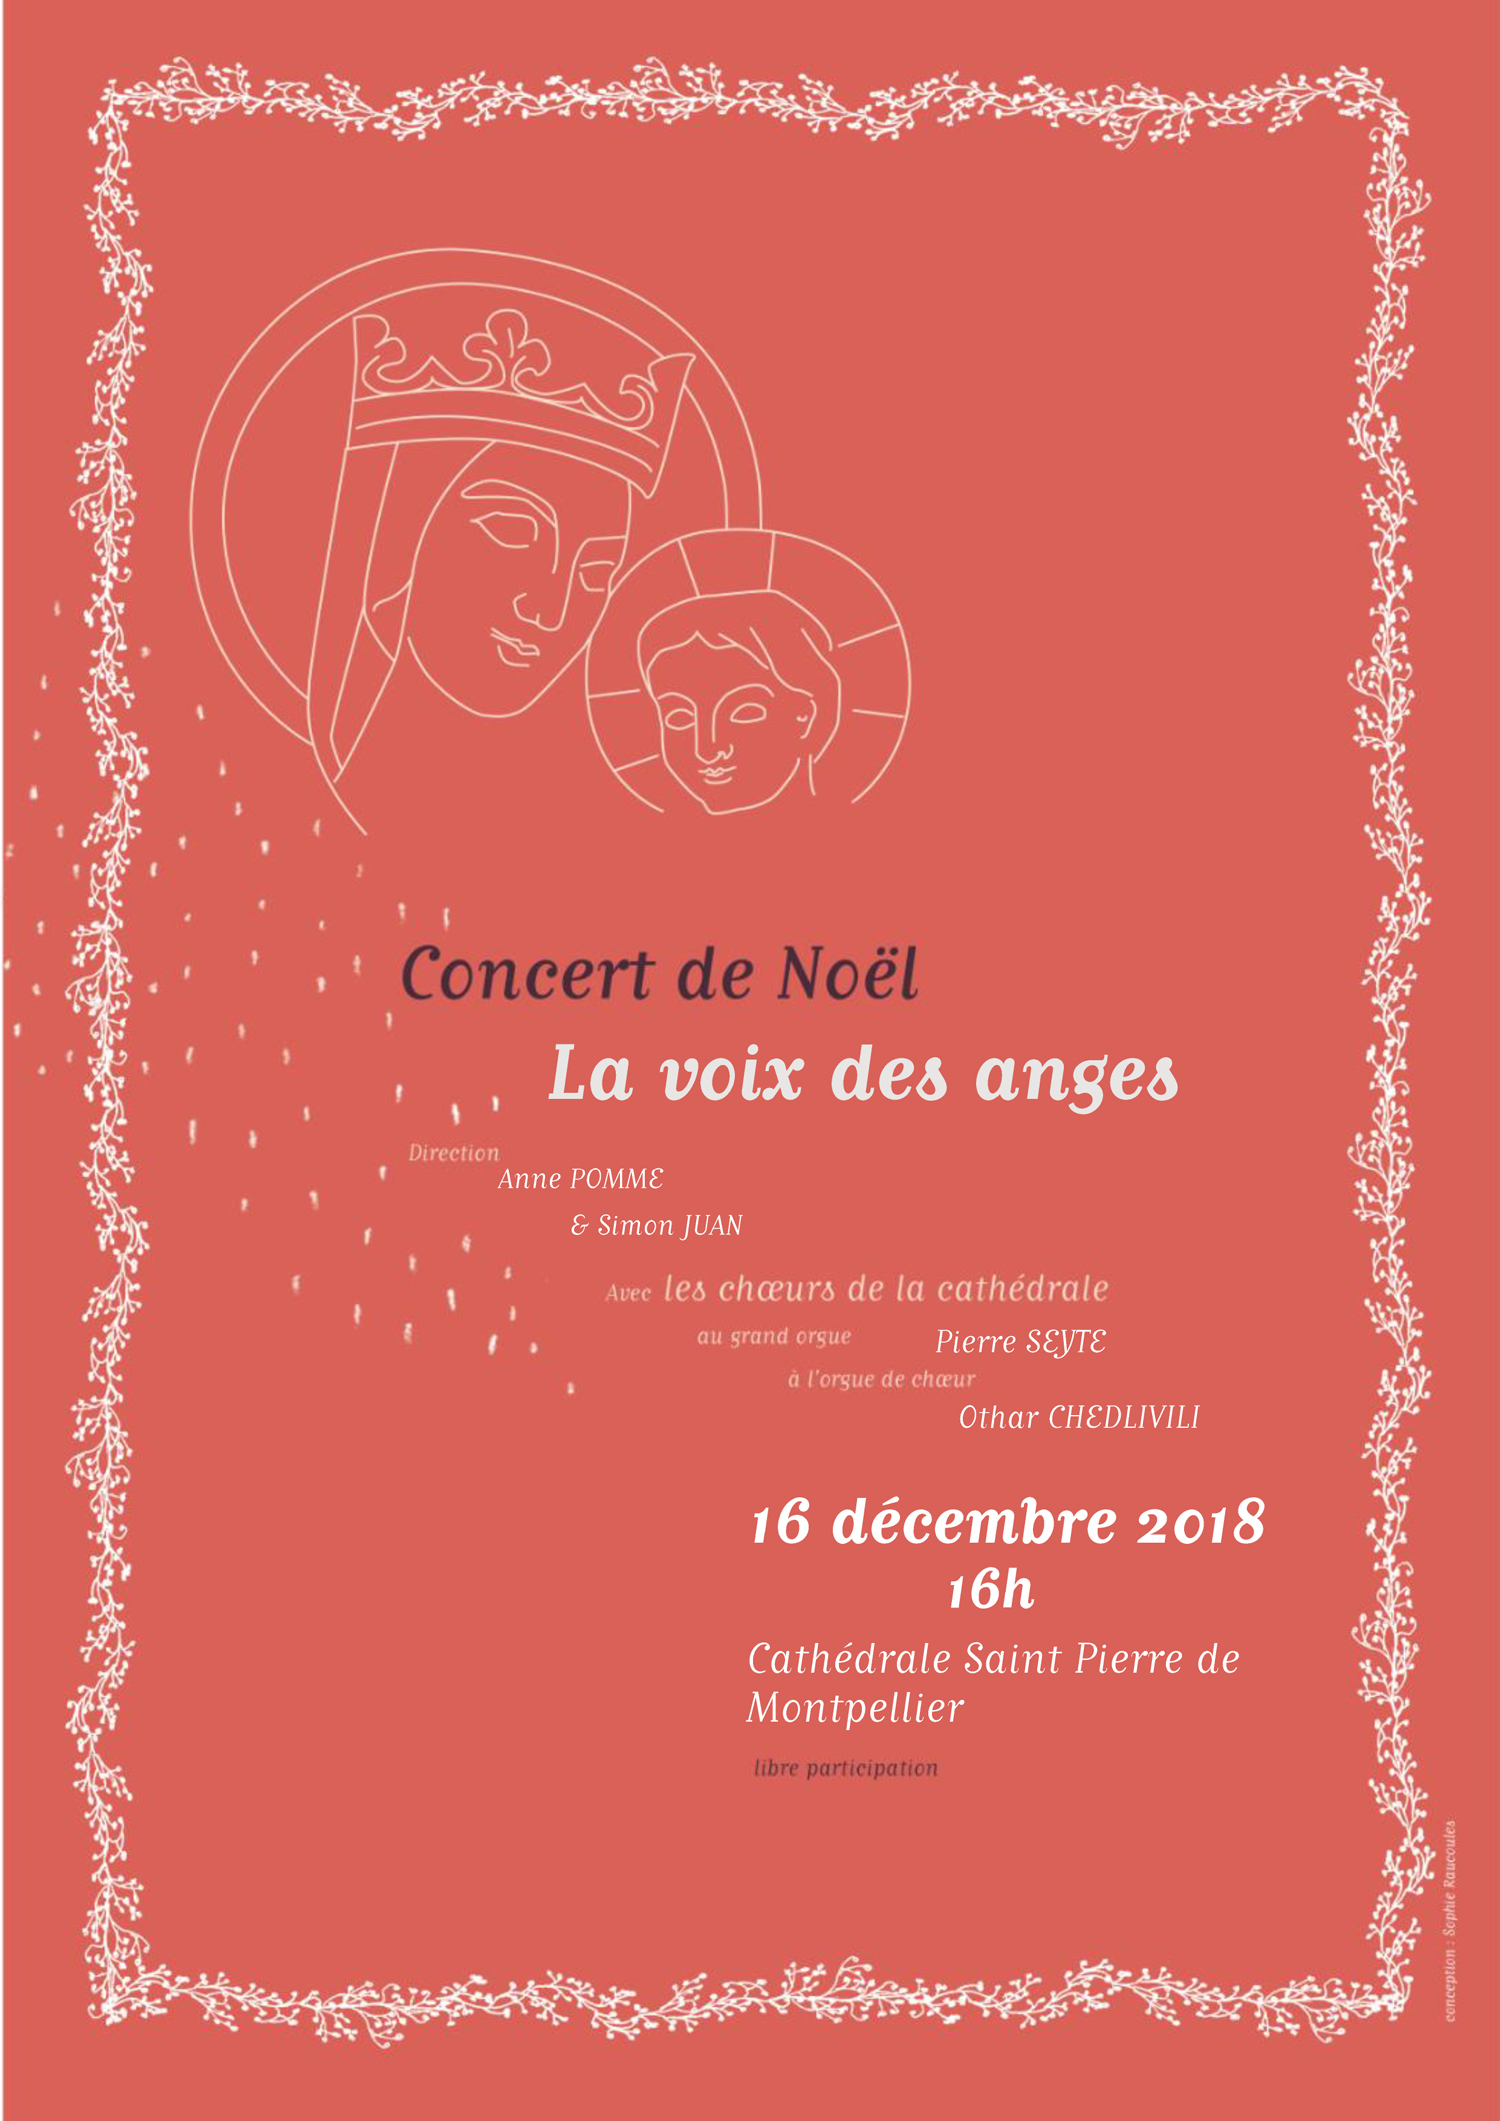 Concert de Noël à la cathédrale St Pierre de Montpellier (34) le 16 décembre 2018